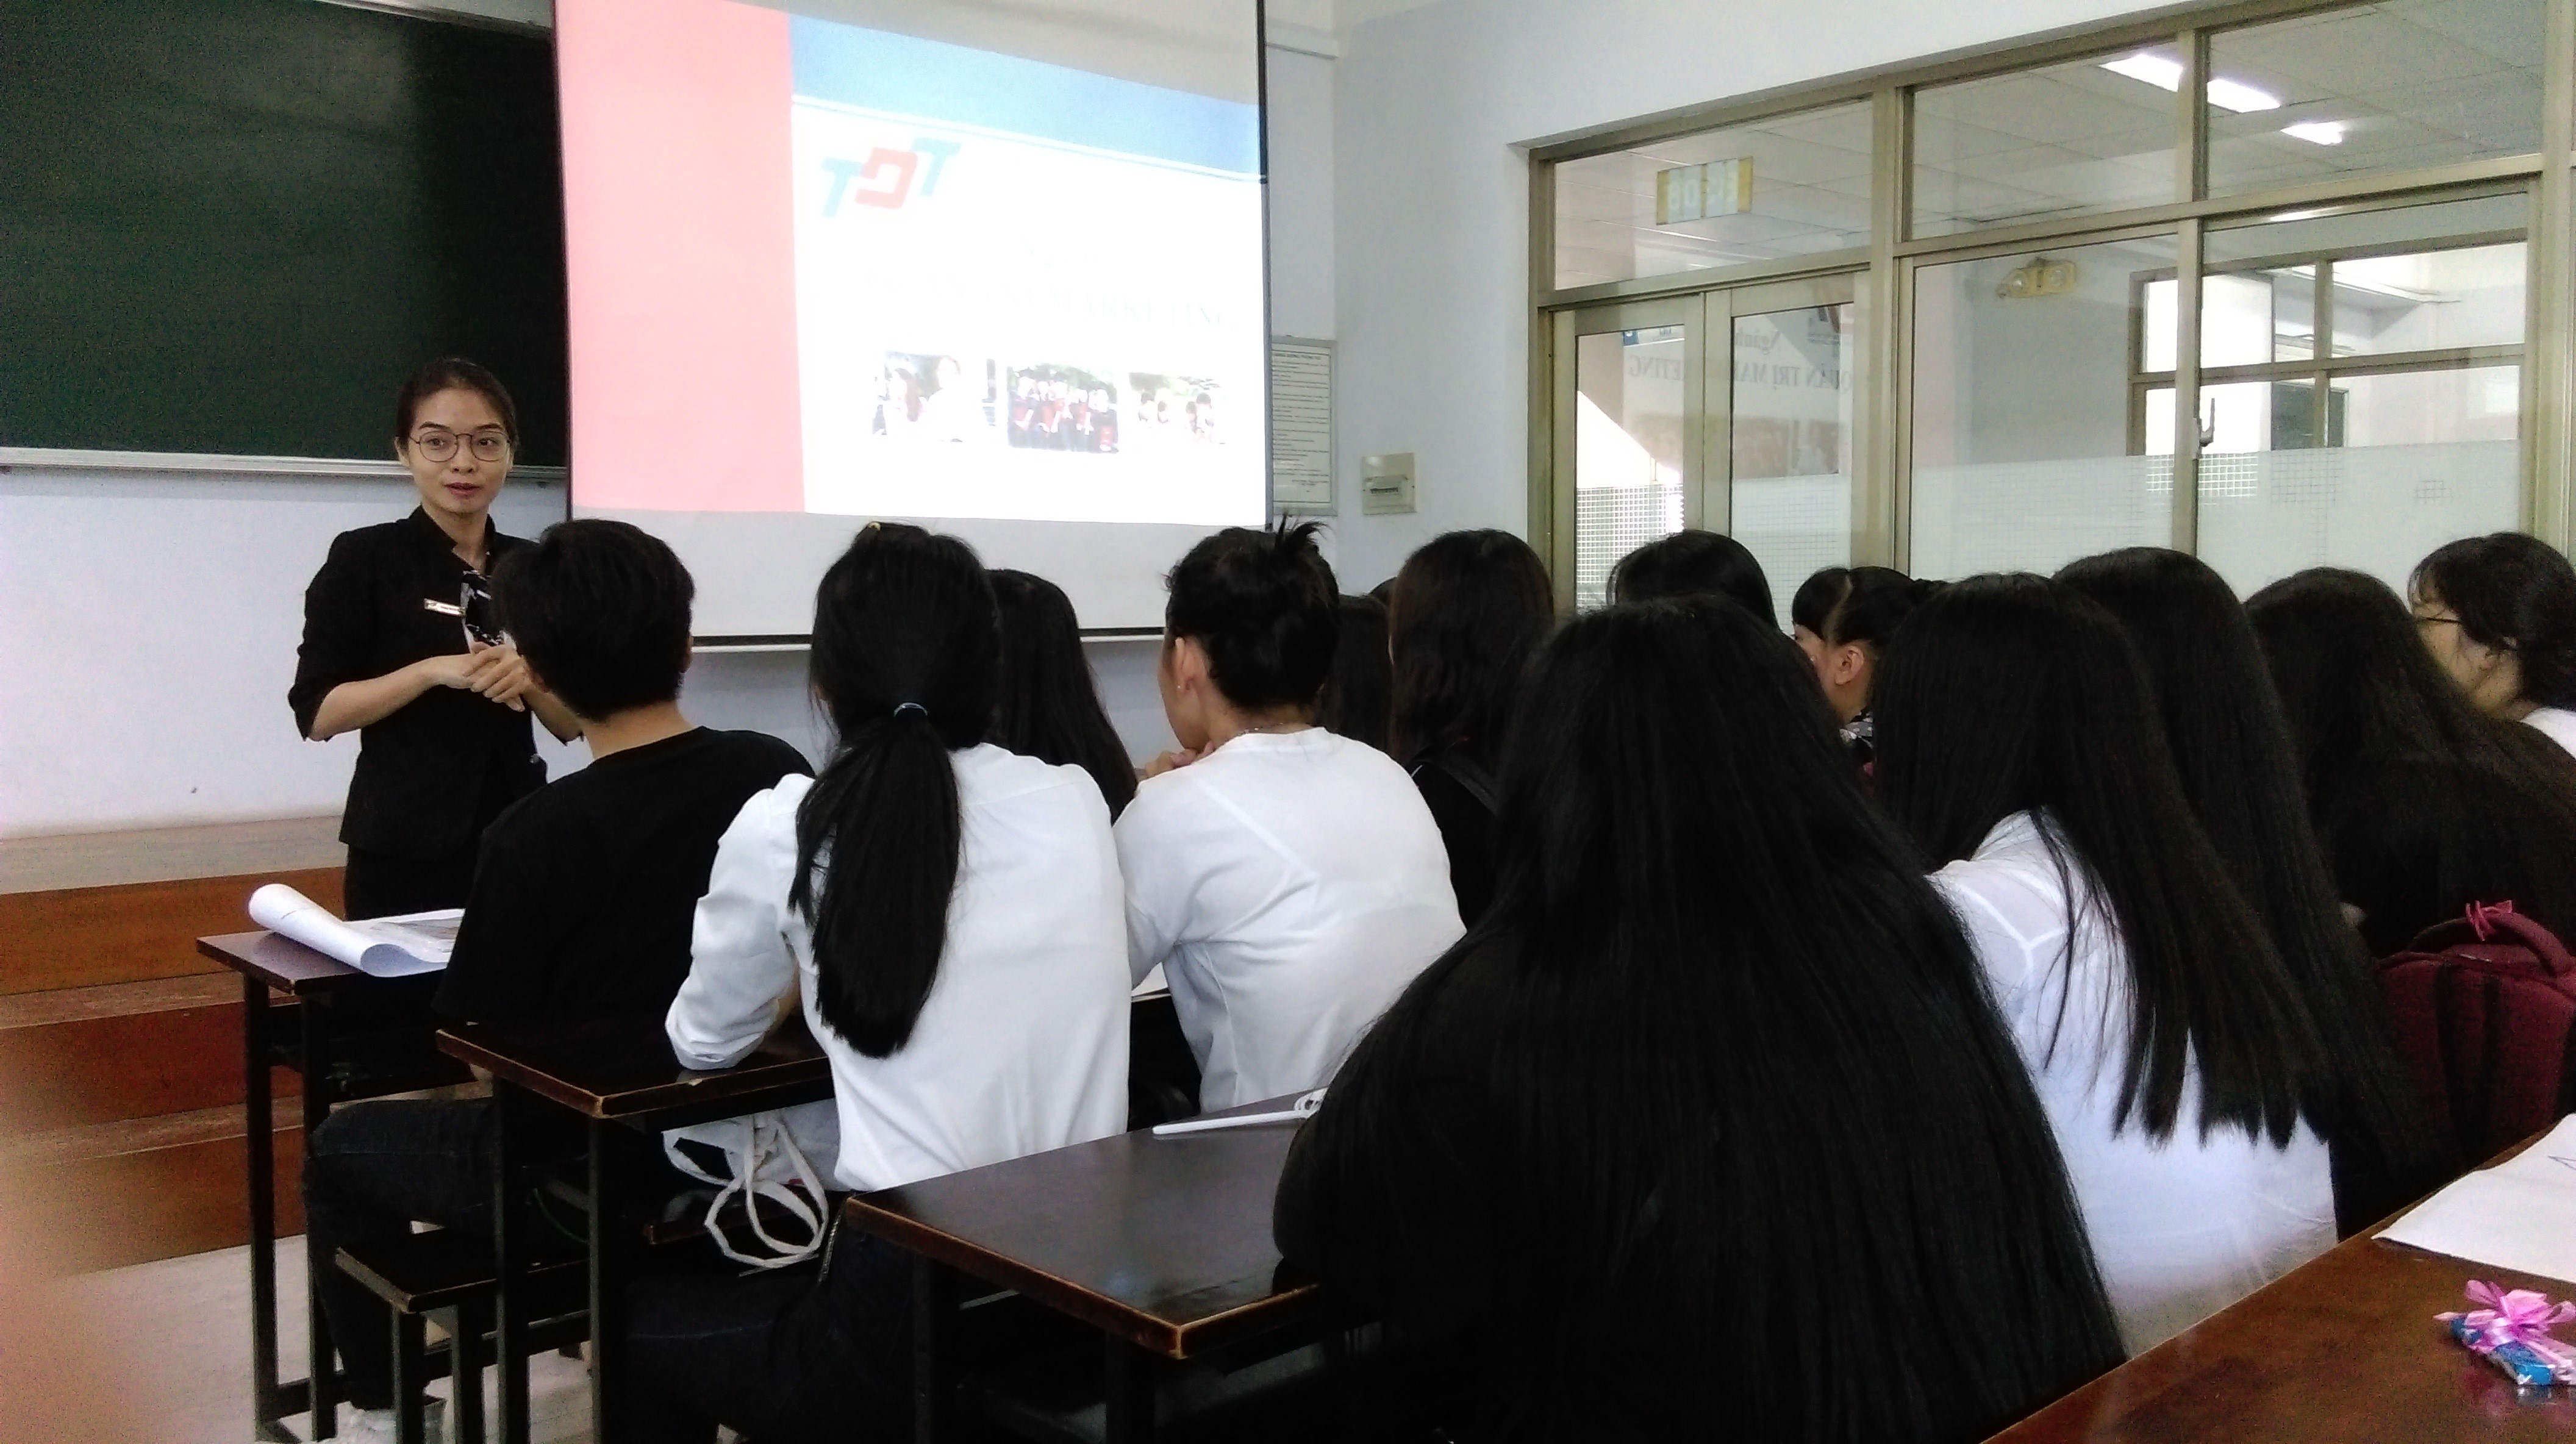 Cô Trương Nữ Tô Giang giới thiệu về chương trình Liên Kết của Trường Đại Học Tôn Đức Thắng và các trường đối tác.